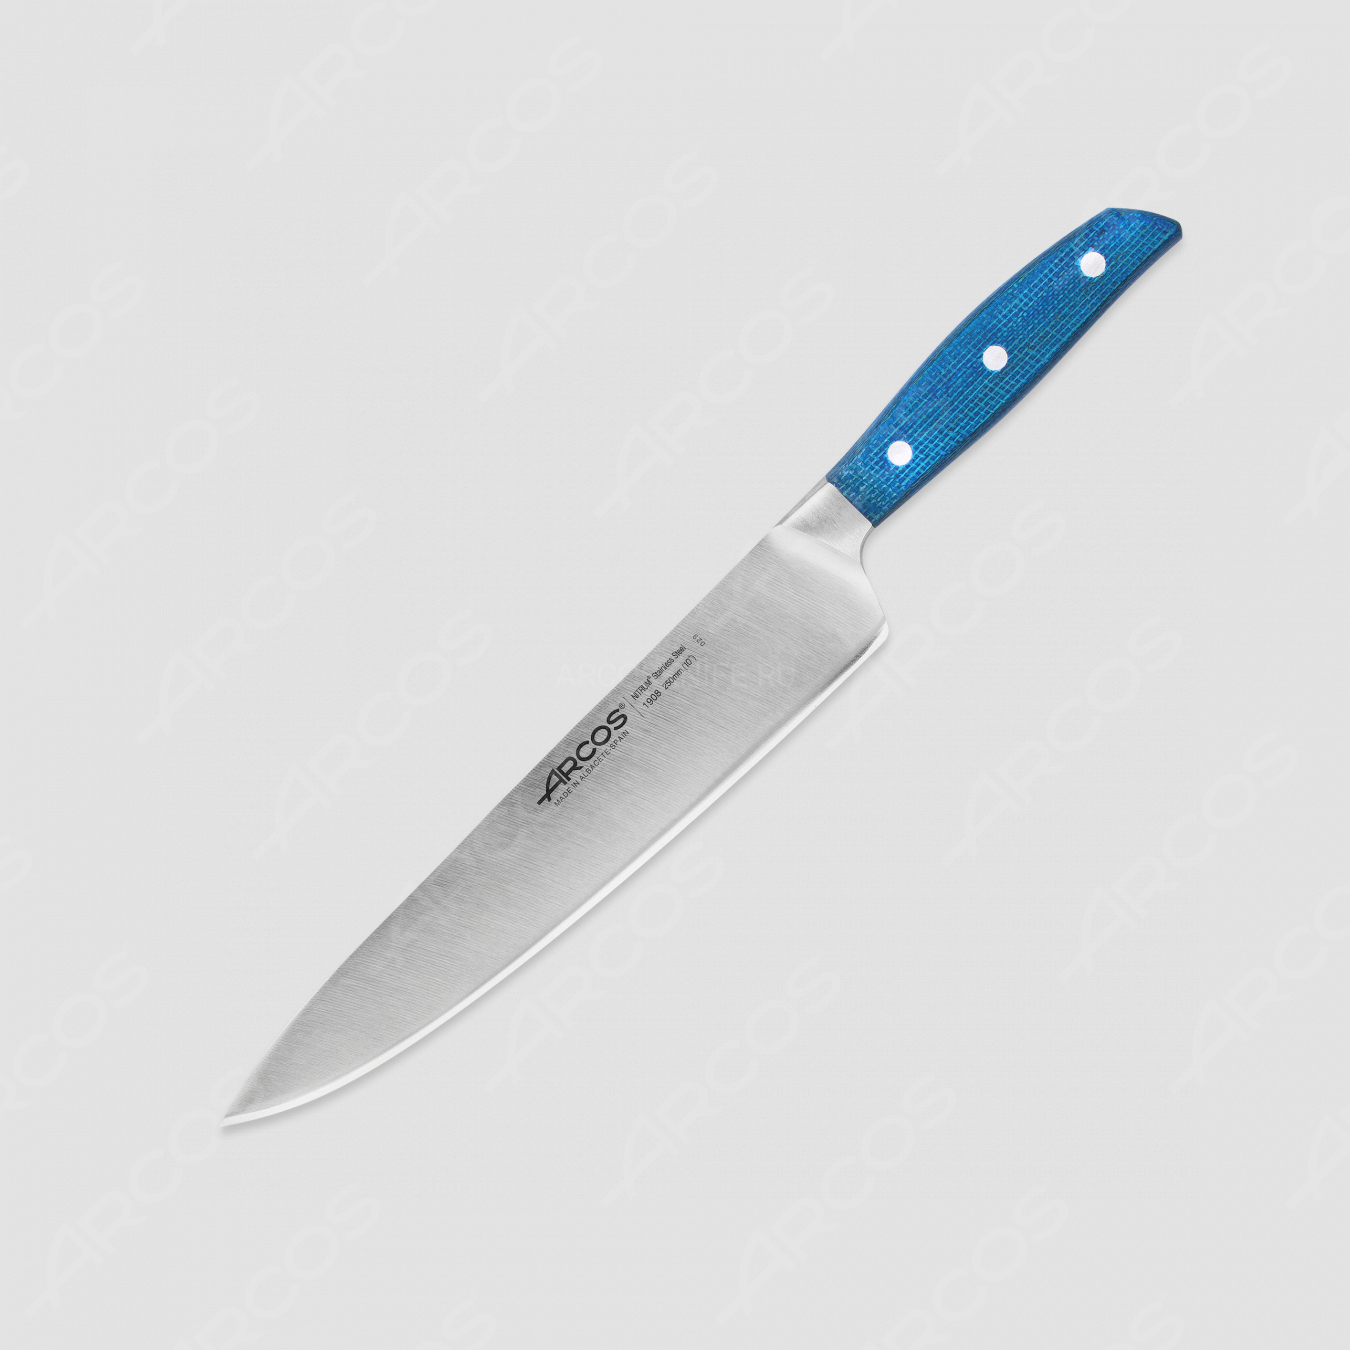 Профессиональный поварской кухонный нож 25 см, серия Brooklyn, ARCOS, Испания